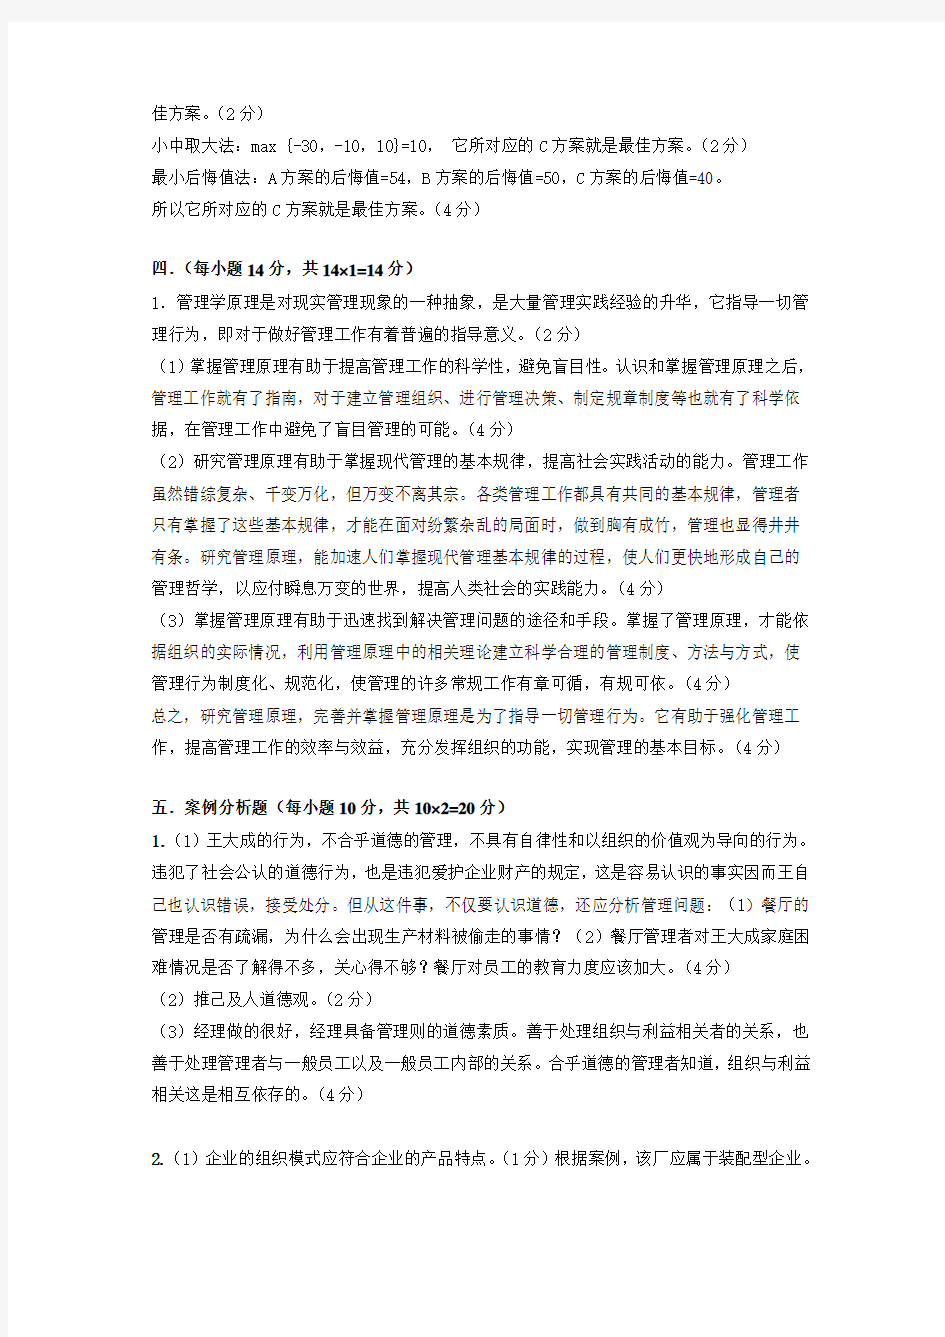 桂林电子科技大学管理学考试答案 (4)